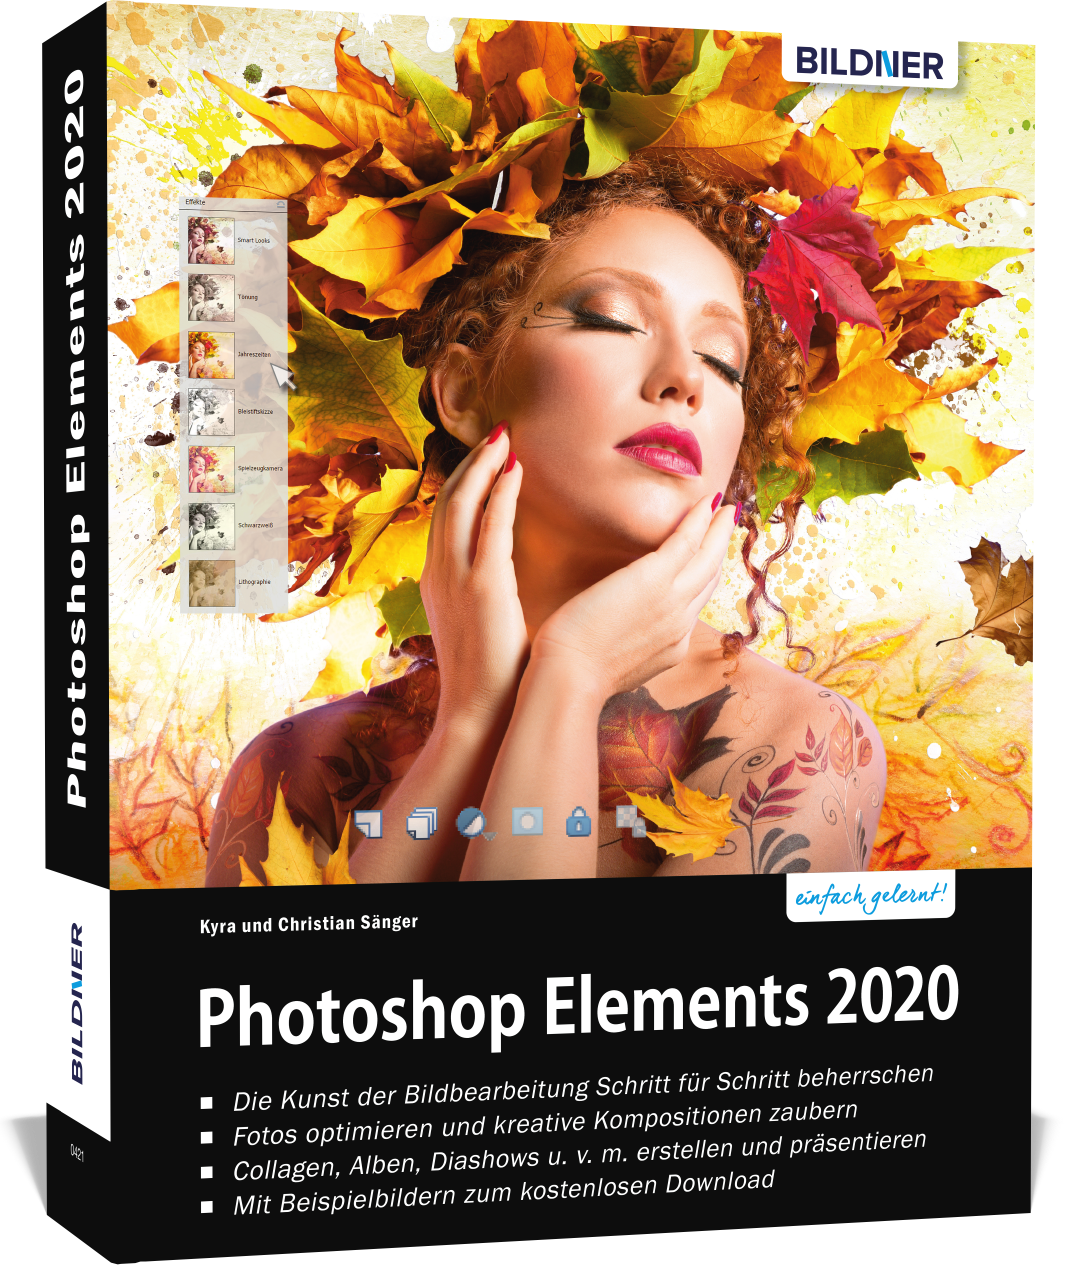 using photoshop elements 2020